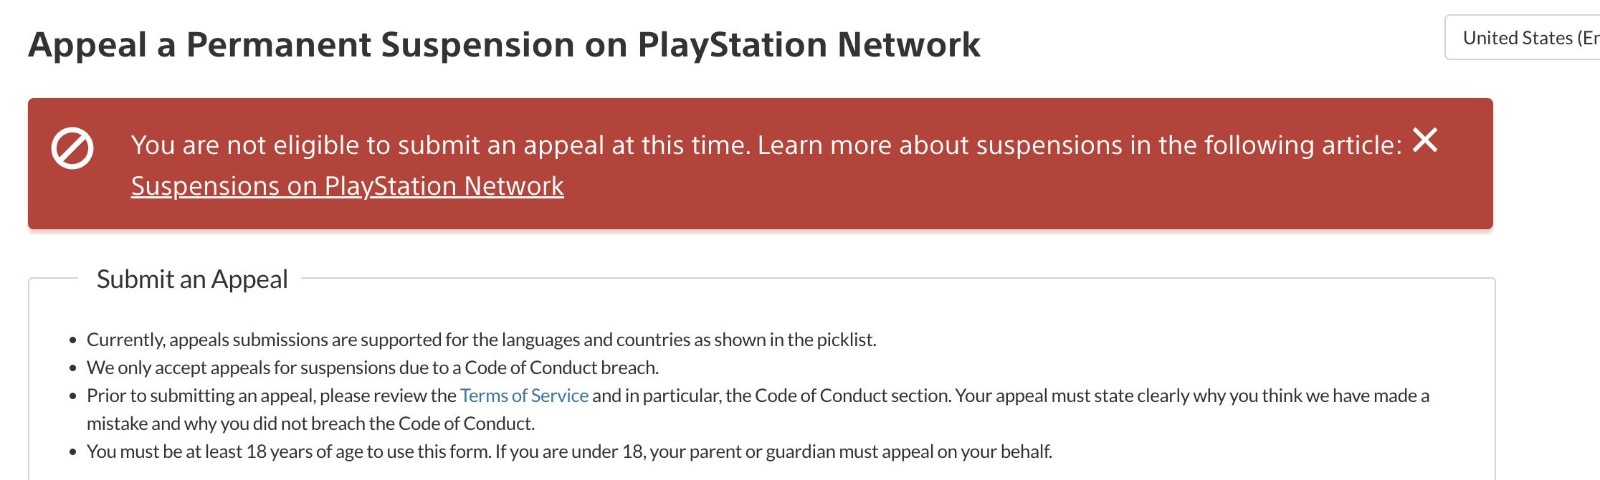 若干索尼PSN账户因不明原因被永久封号